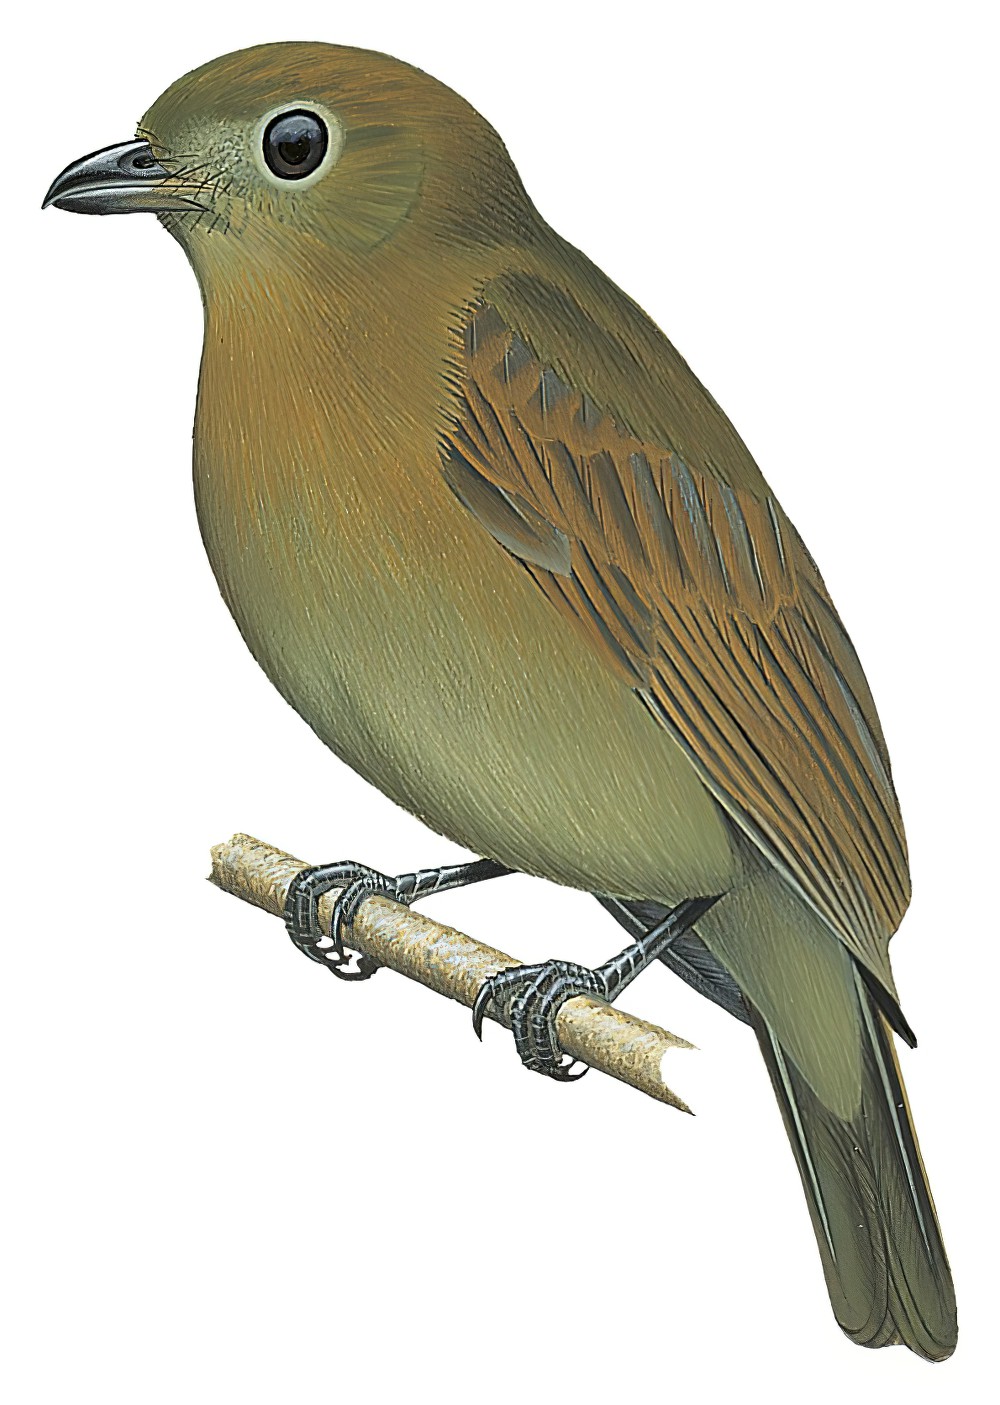 Russet-winged Schiffornis / Schiffornis stenorhyncha